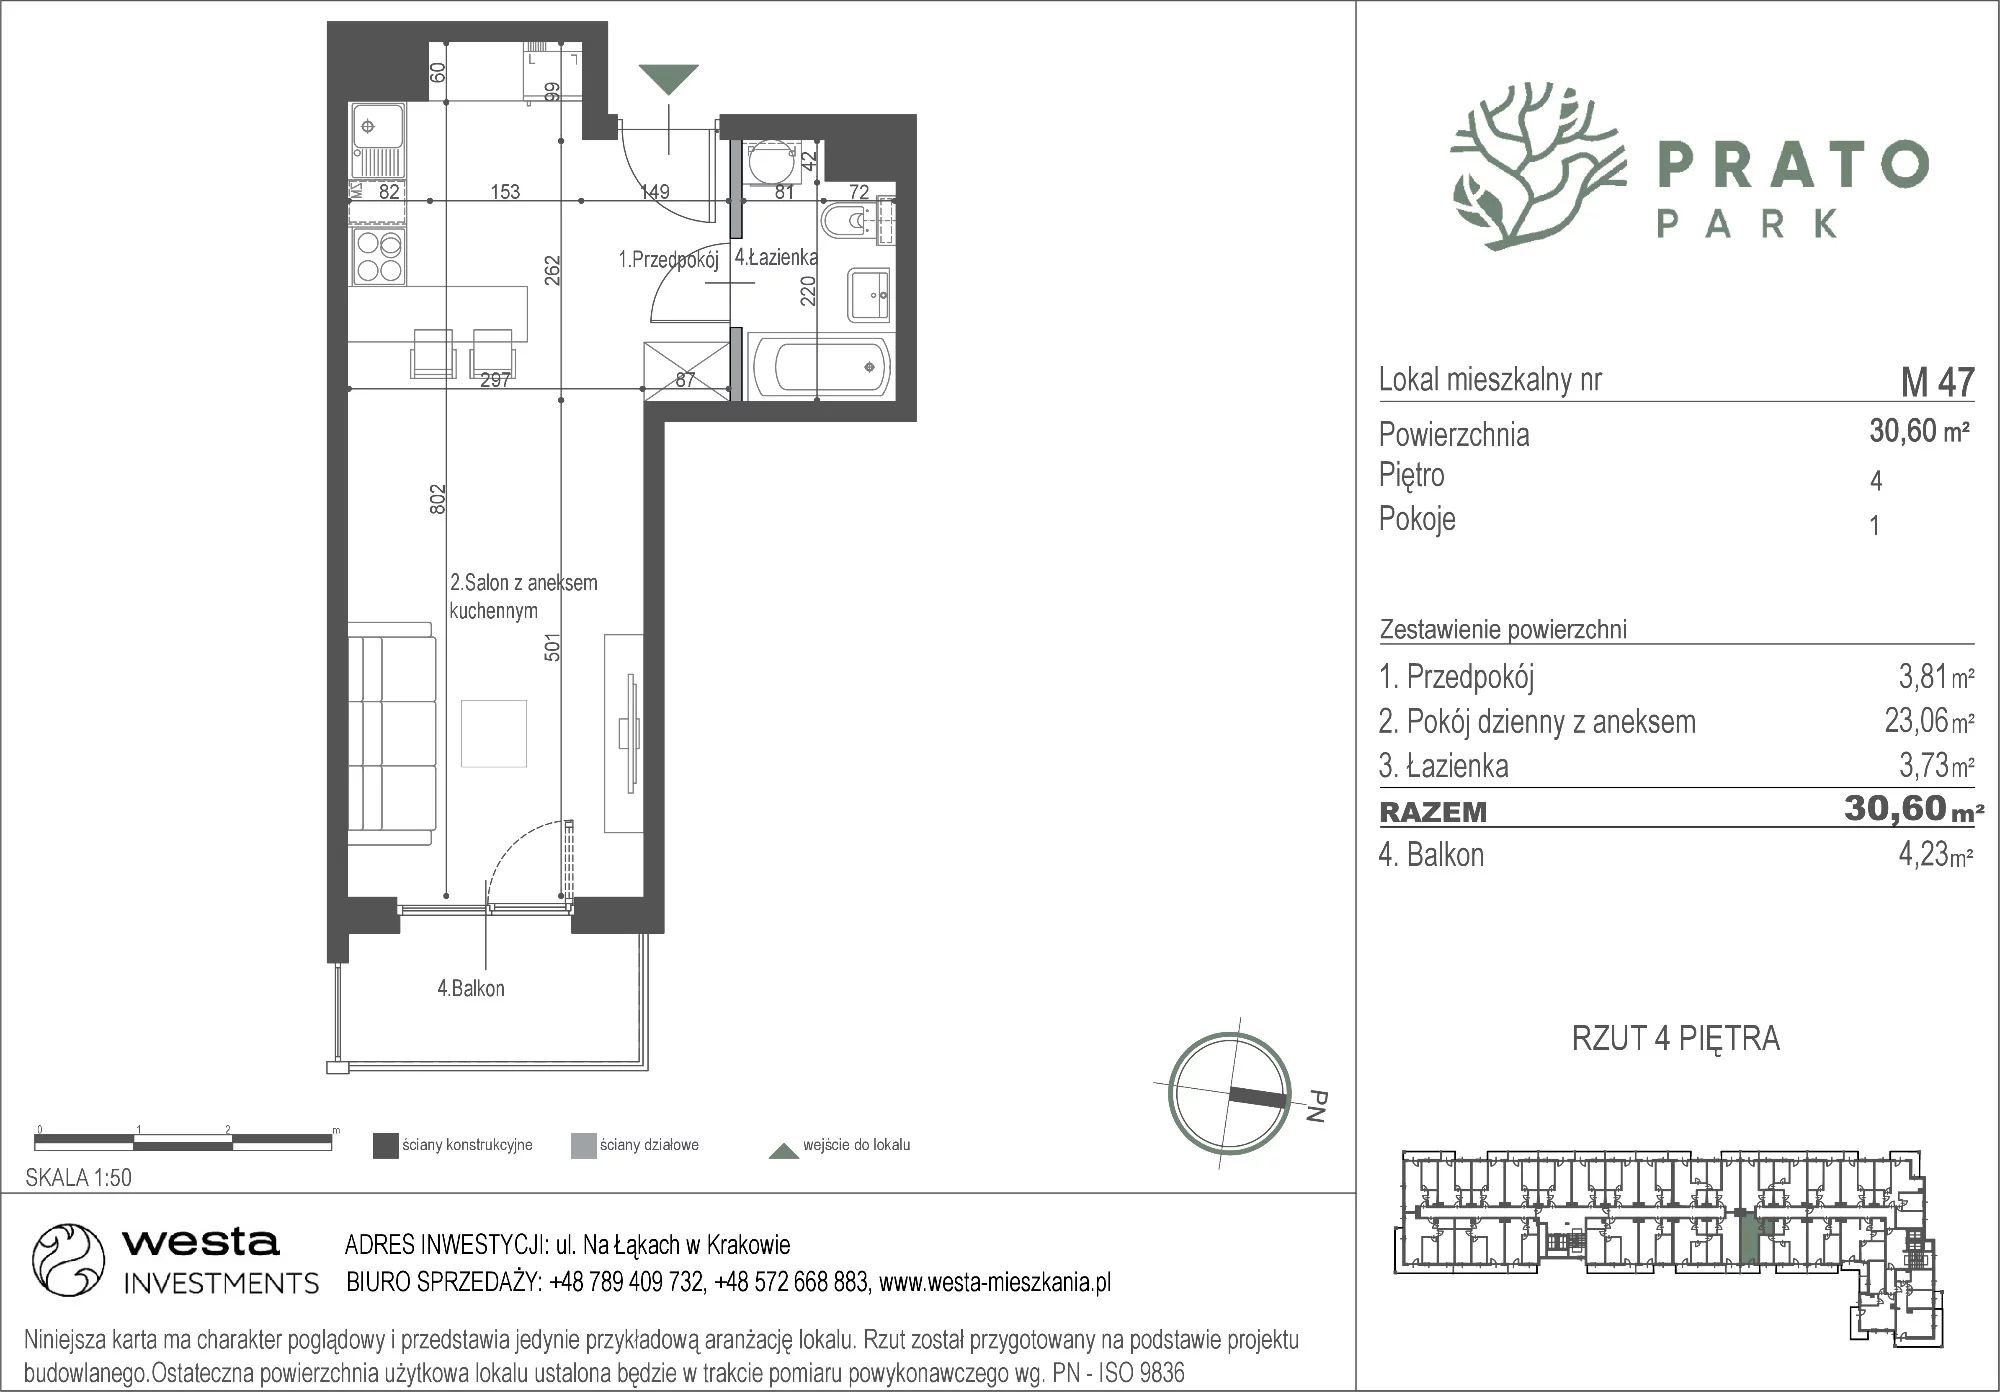 Mieszkanie 30,60 m², piętro 4, oferta nr M47, Prato Park, Kraków, Czyżyny, ul. Na Łąkach